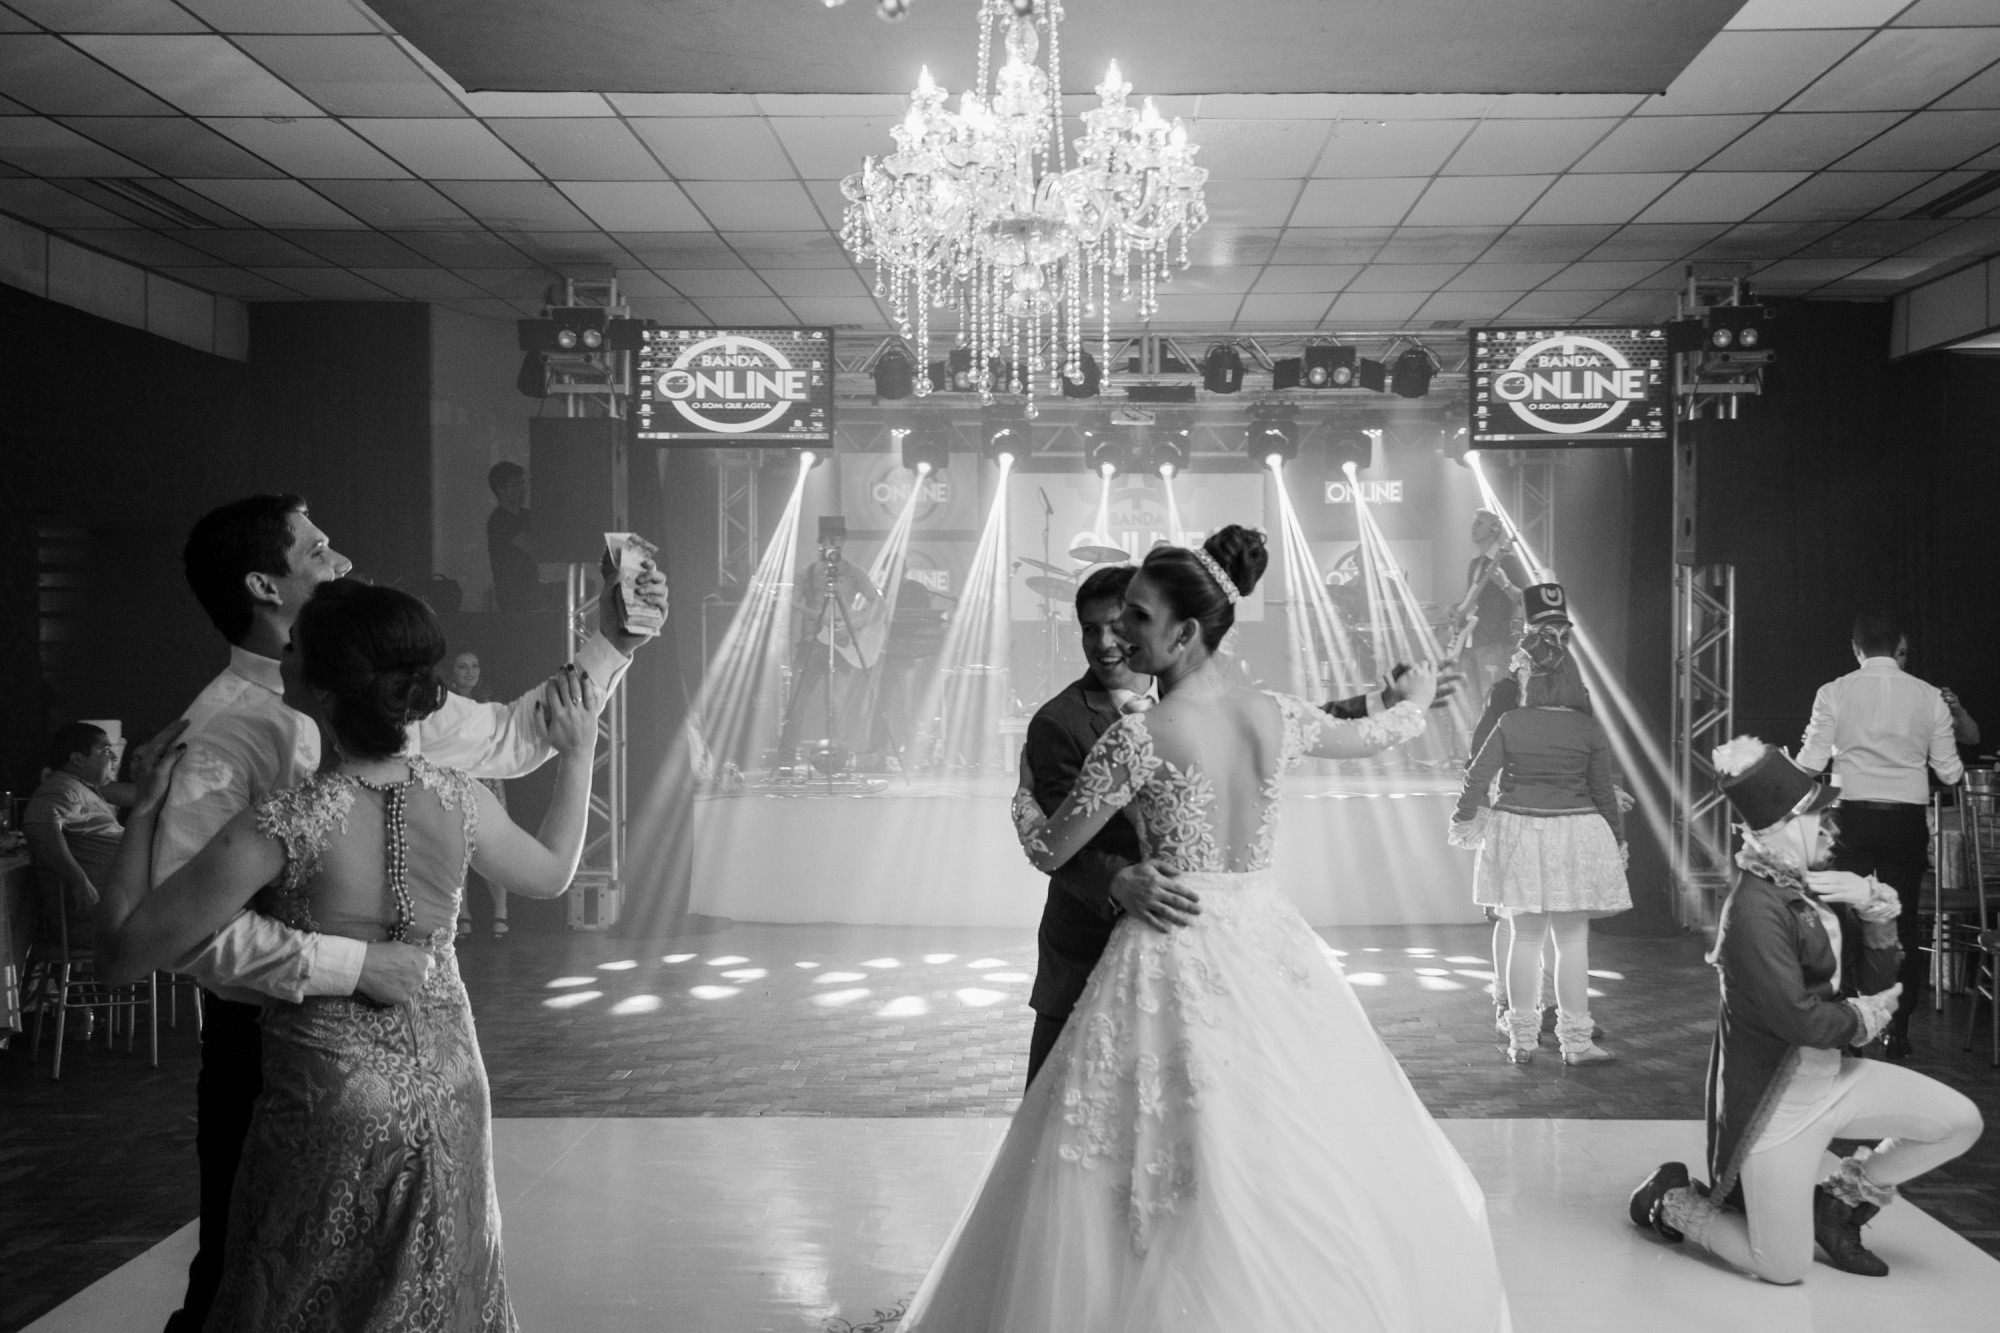 Casamento Anderson e Juliana Fioreli em Iporã Paraná - por Lorran Souza e Léia Sotile - Fotografos de casamentos - JA-3415